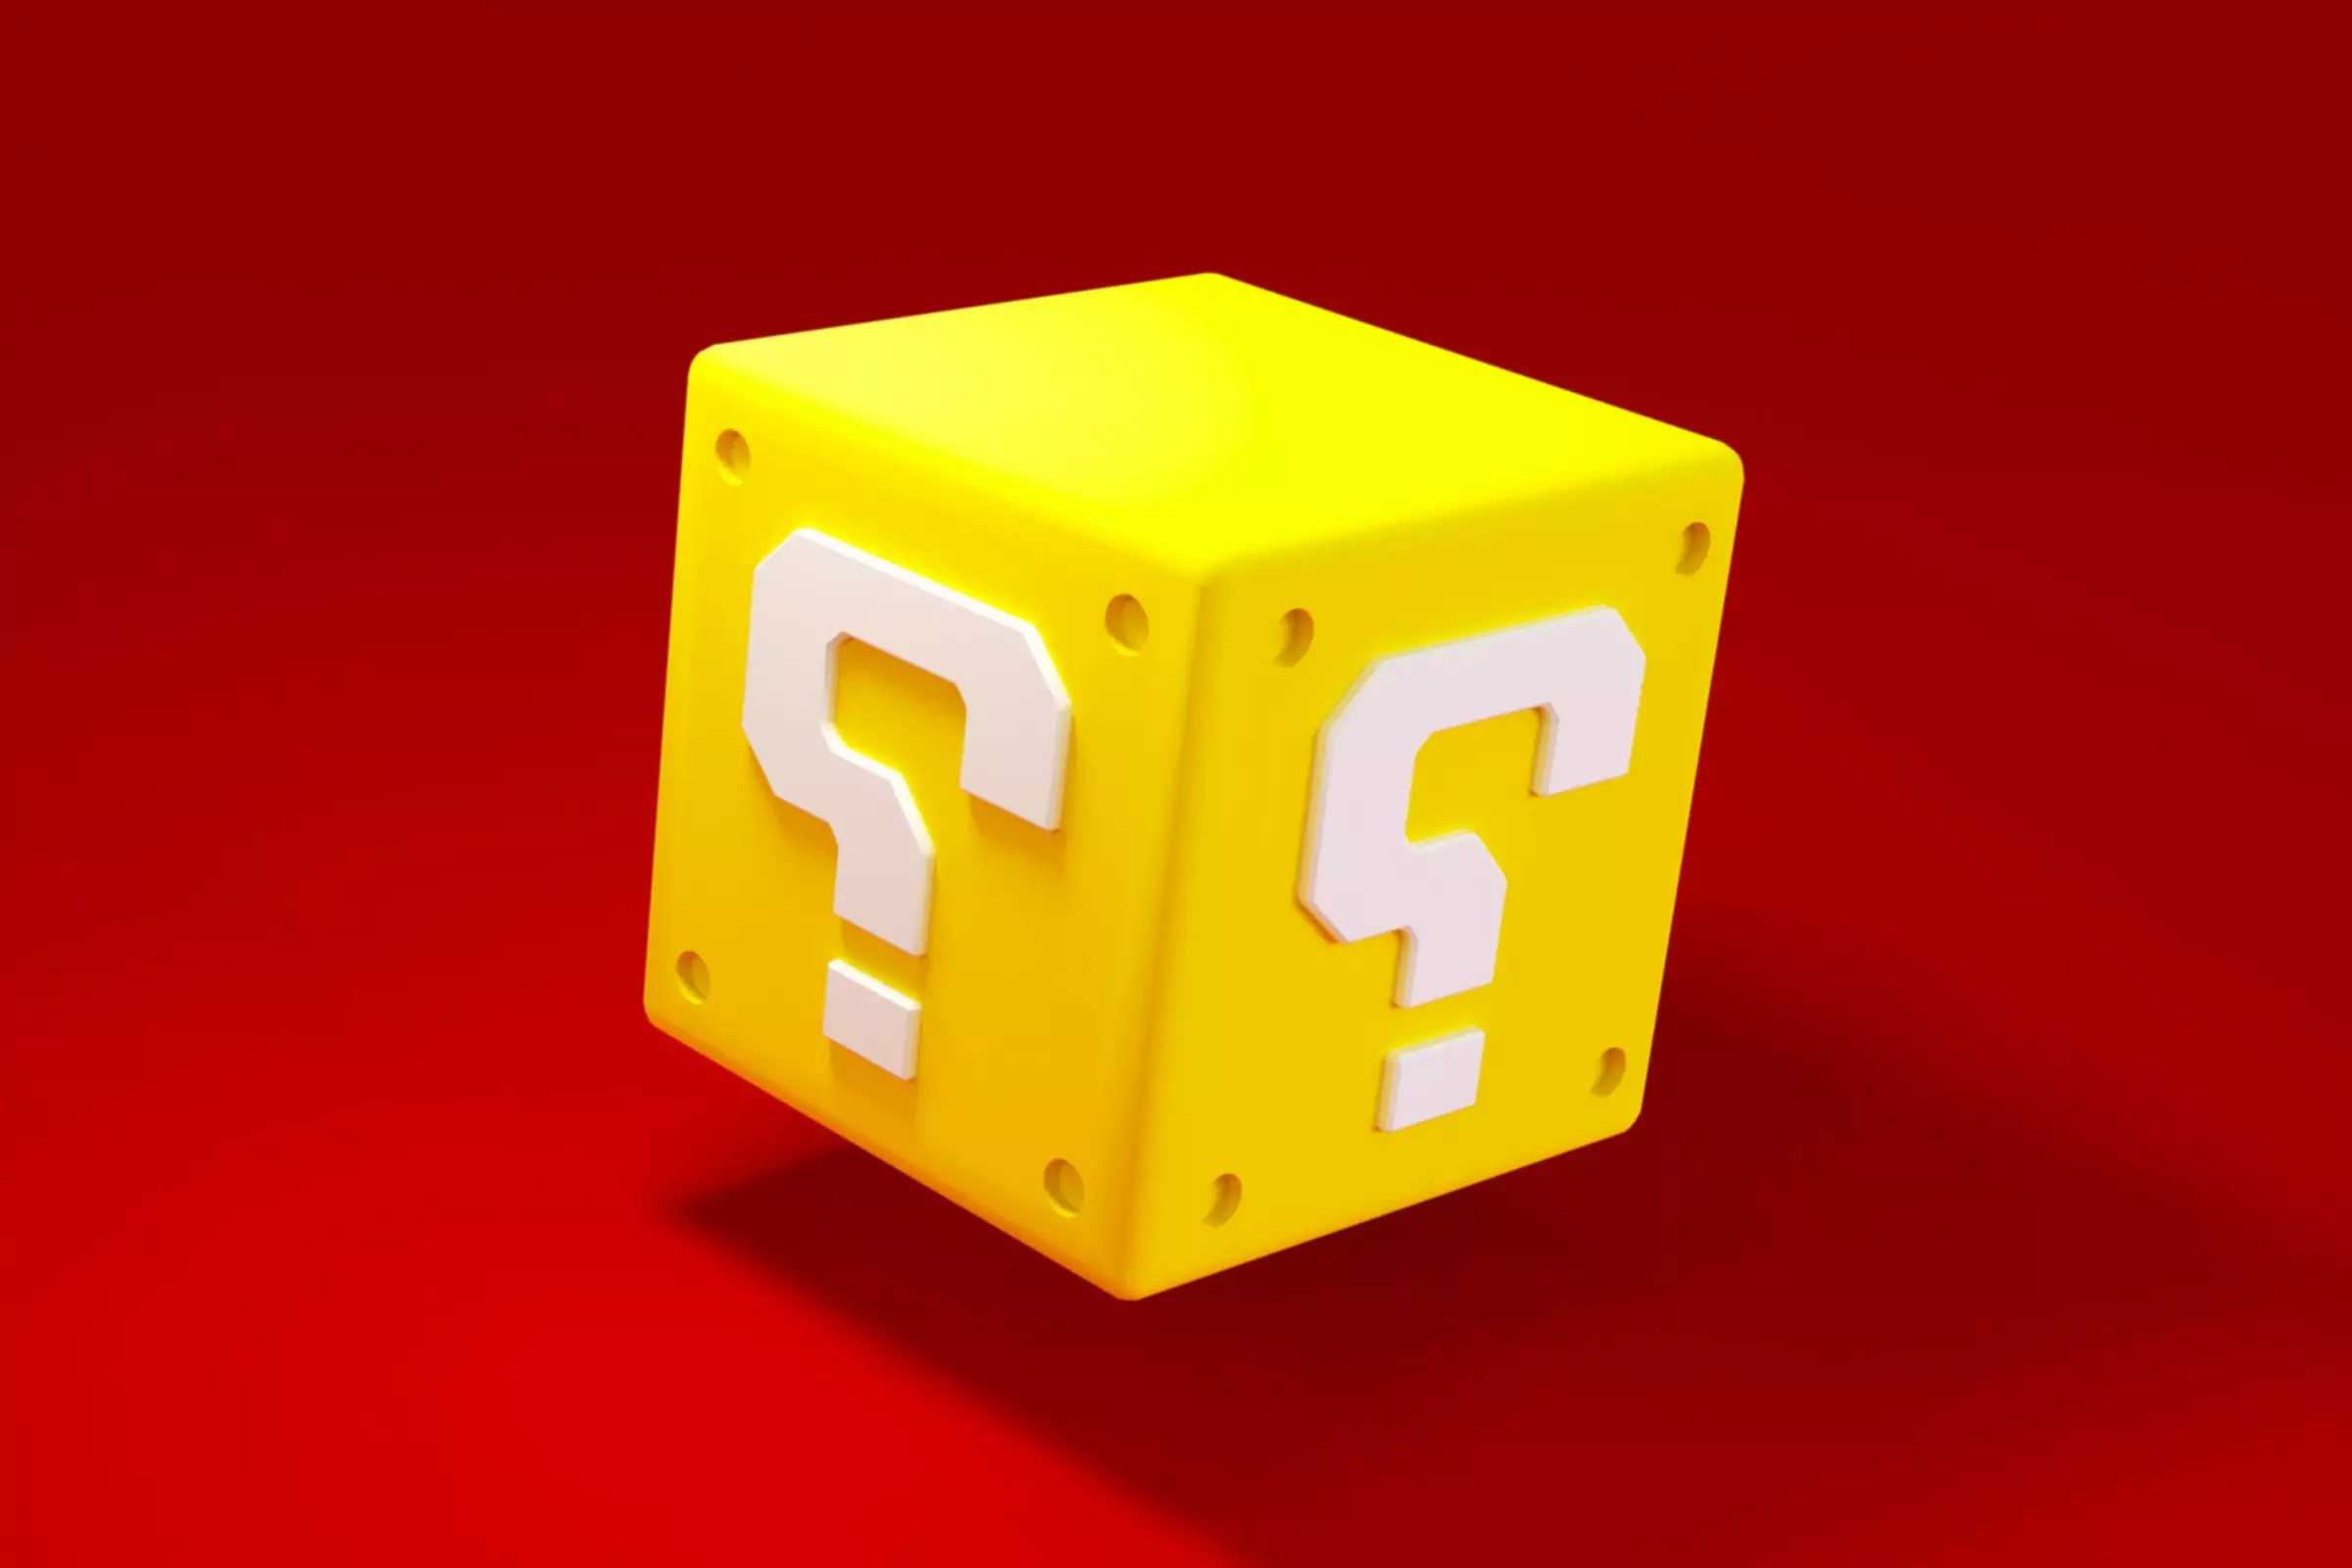 Cub de aur cu semn de întrebare pe ea pe fundal roșu